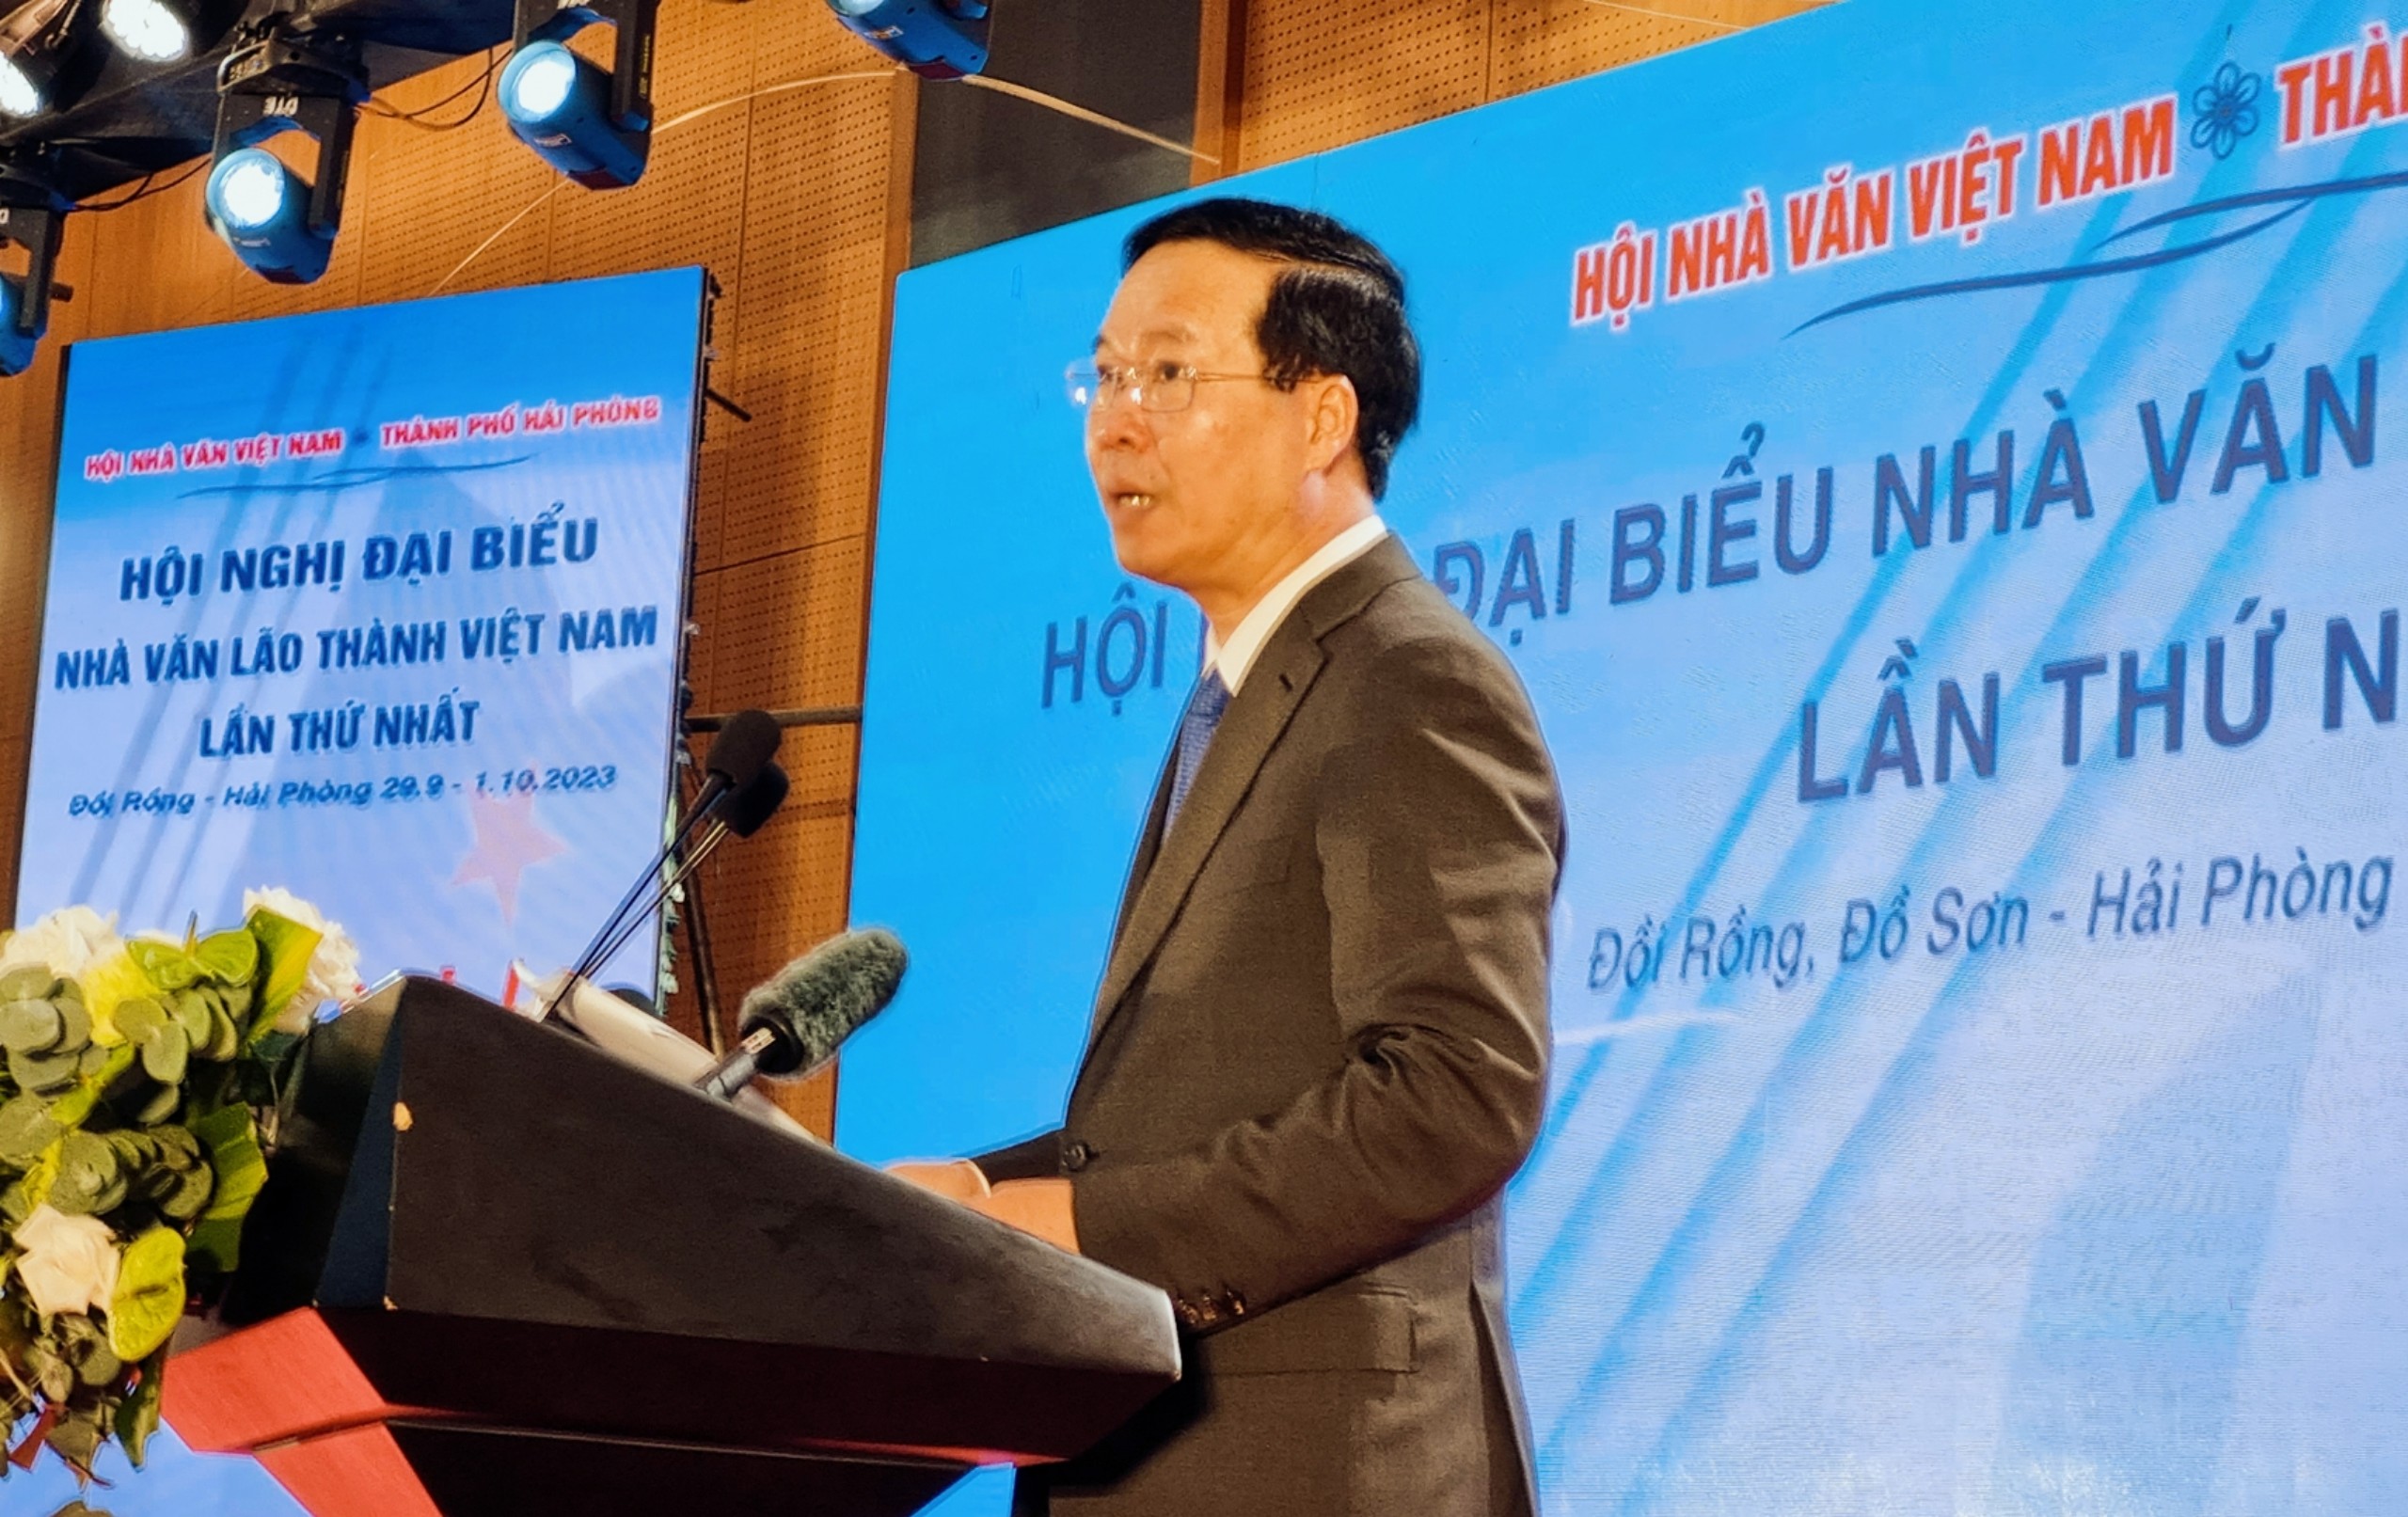 Toàn văn phát biểu của Chủ tịch nước Võ Văn Thưởng tại Hội nghị đại biểu nhà văn lão thành Việt Nam lần thứ nhất - 1